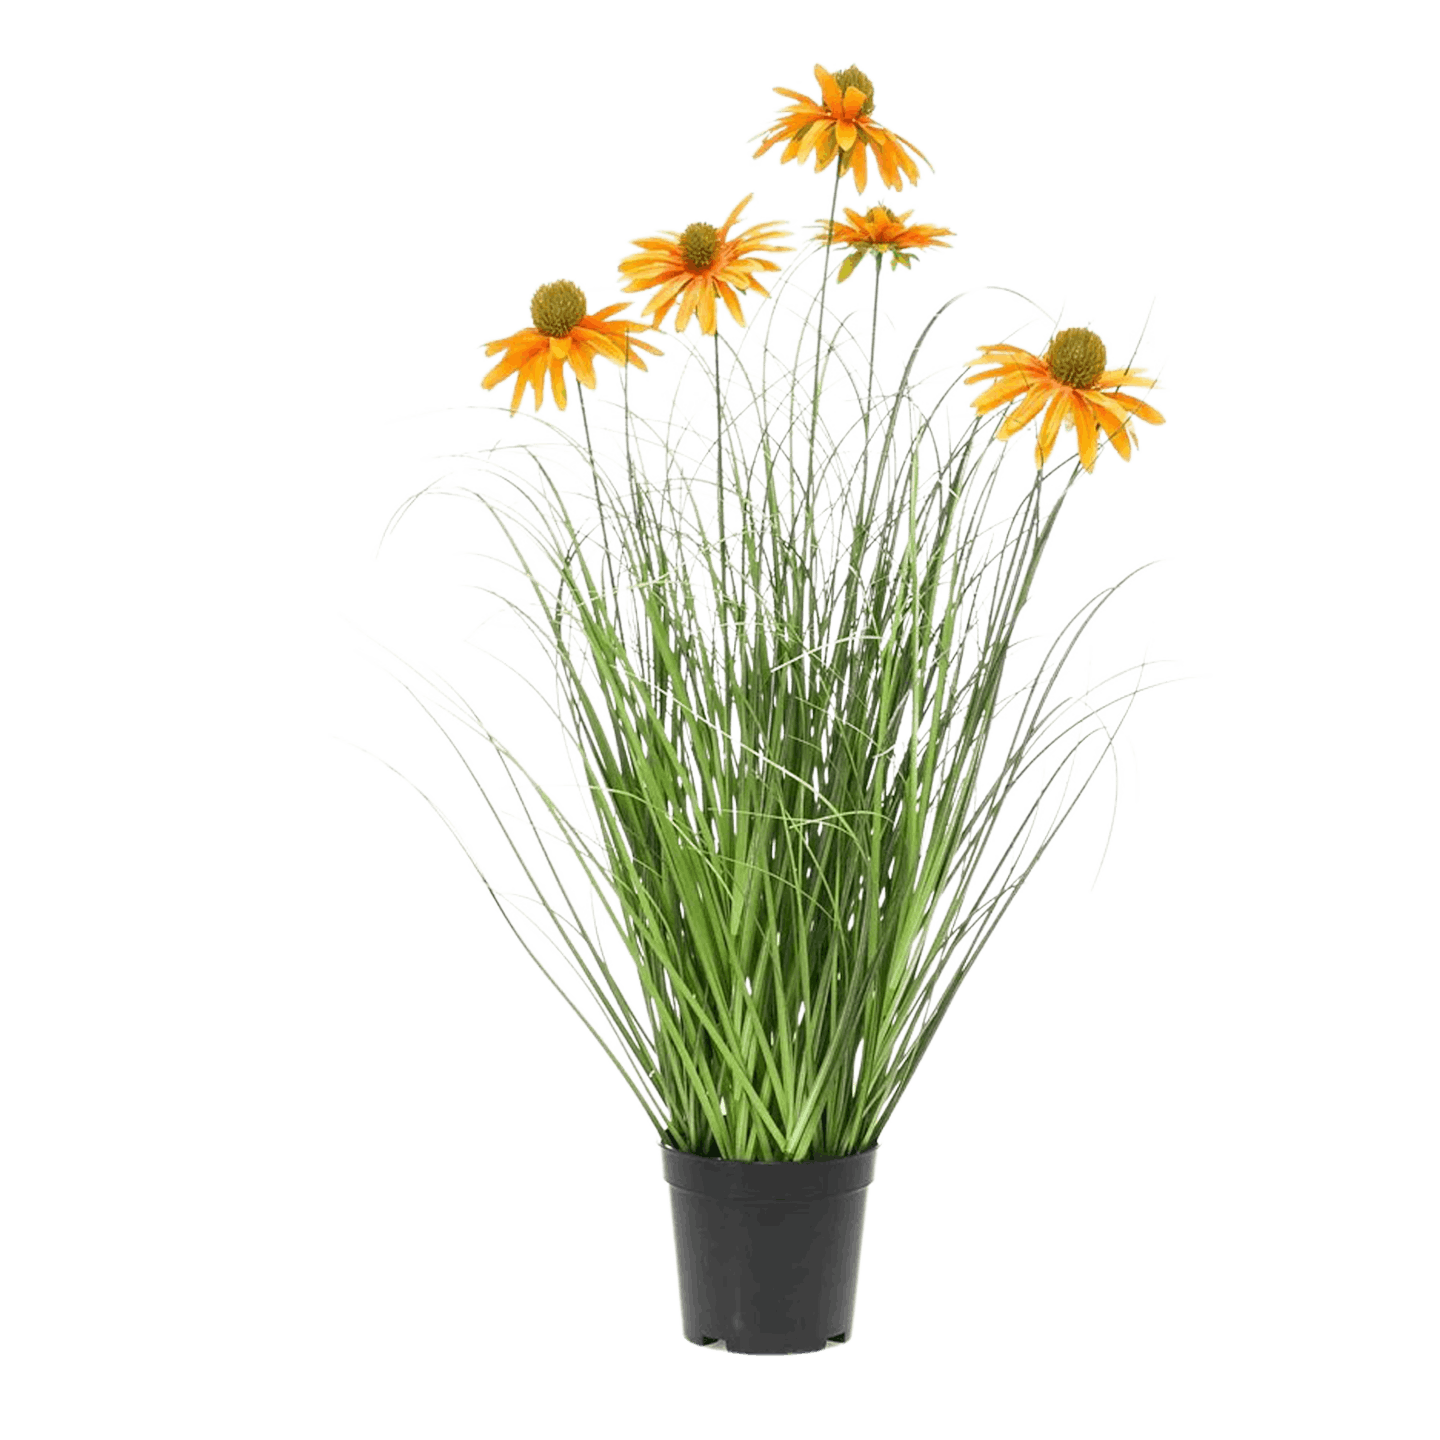 Artificial rudbeckia grass plant - orange flowers